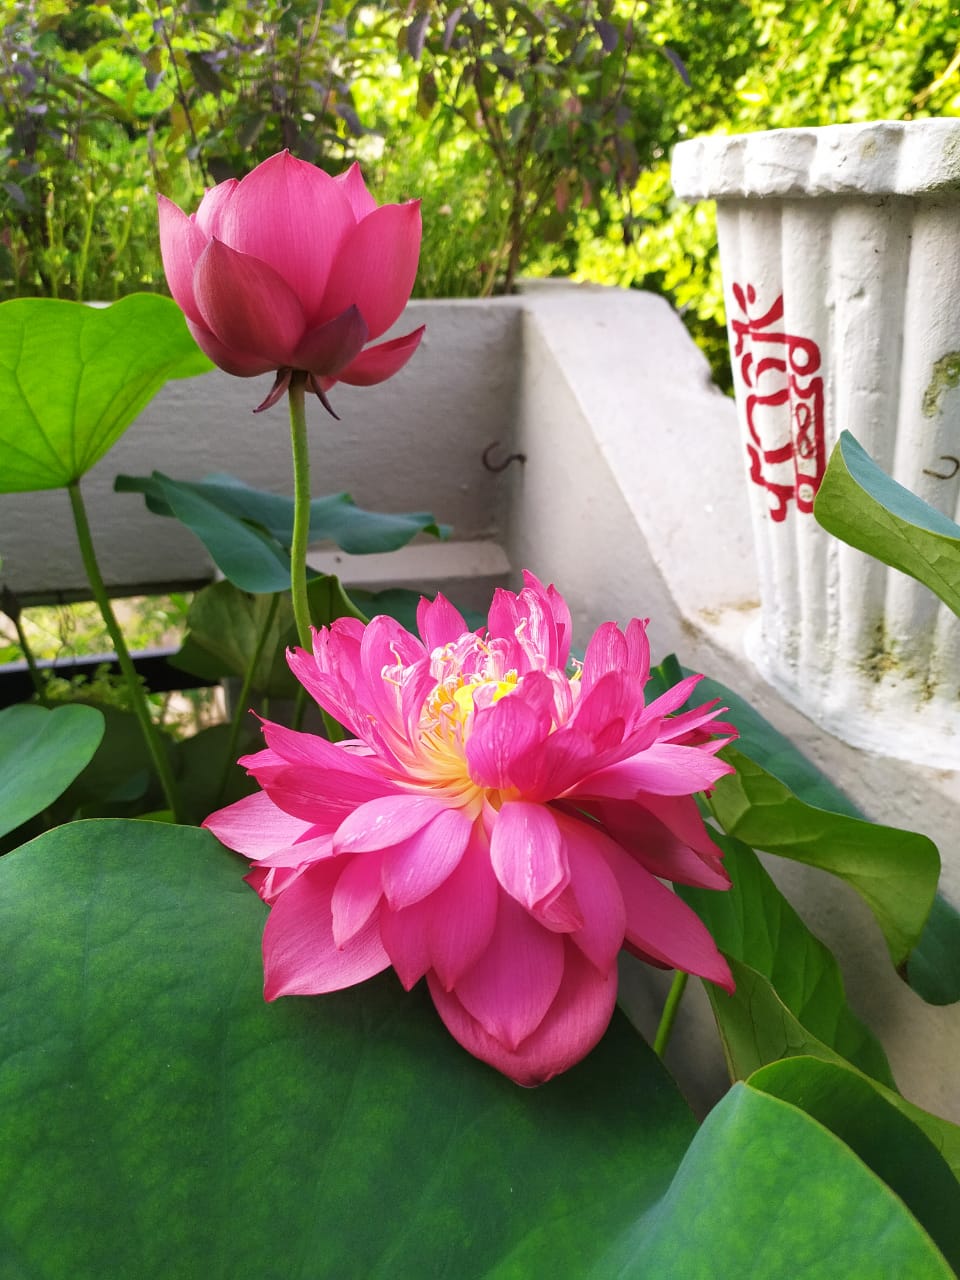 Bunga teratai merah muda yang indah bermekaran di taman teras Jayanti Sahu 